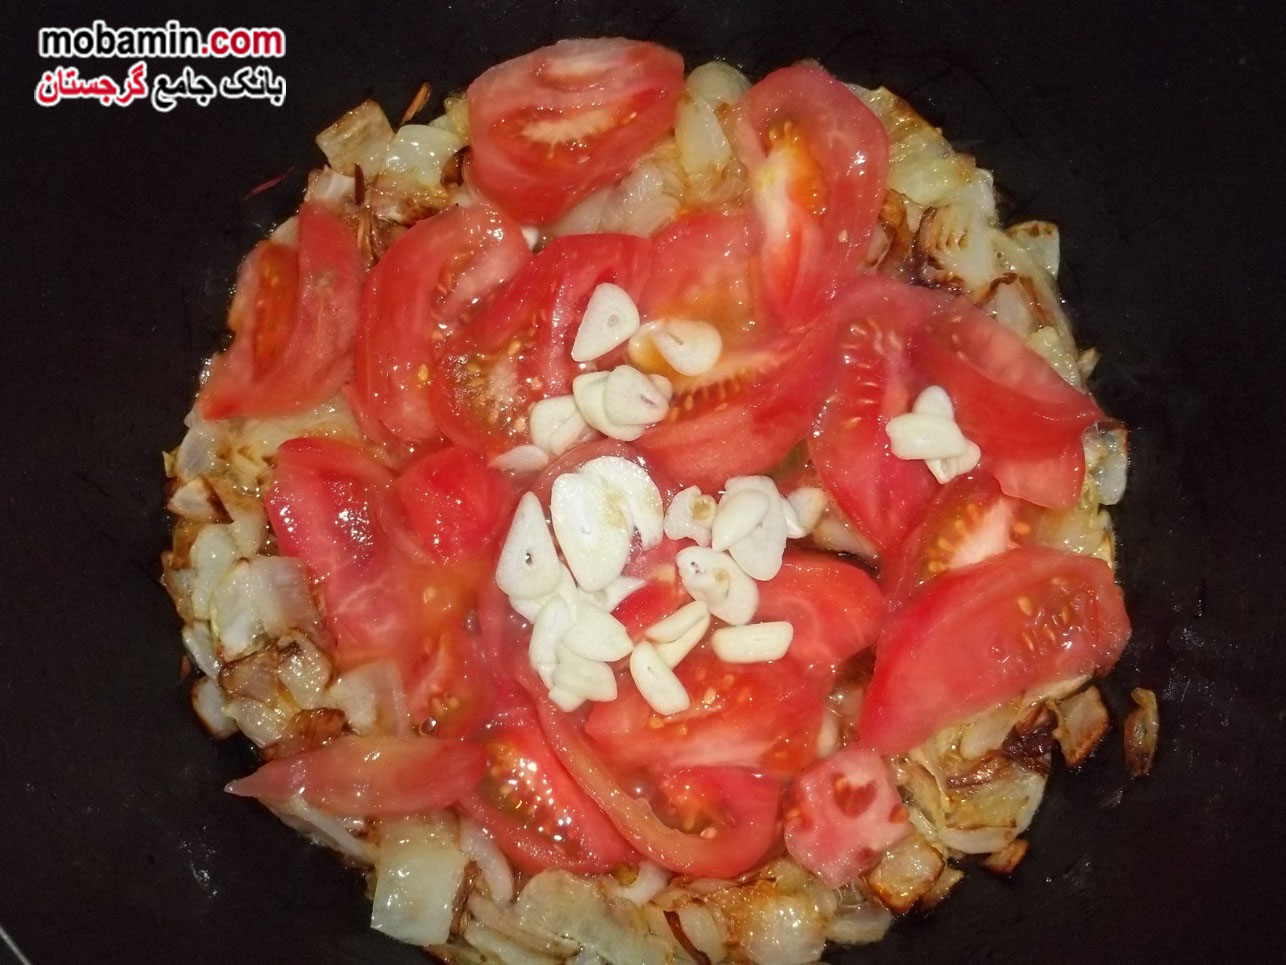 طرز تهیه ی "بادمجان به همراه سبزیجات و گوجه" غذایی گرجستانی